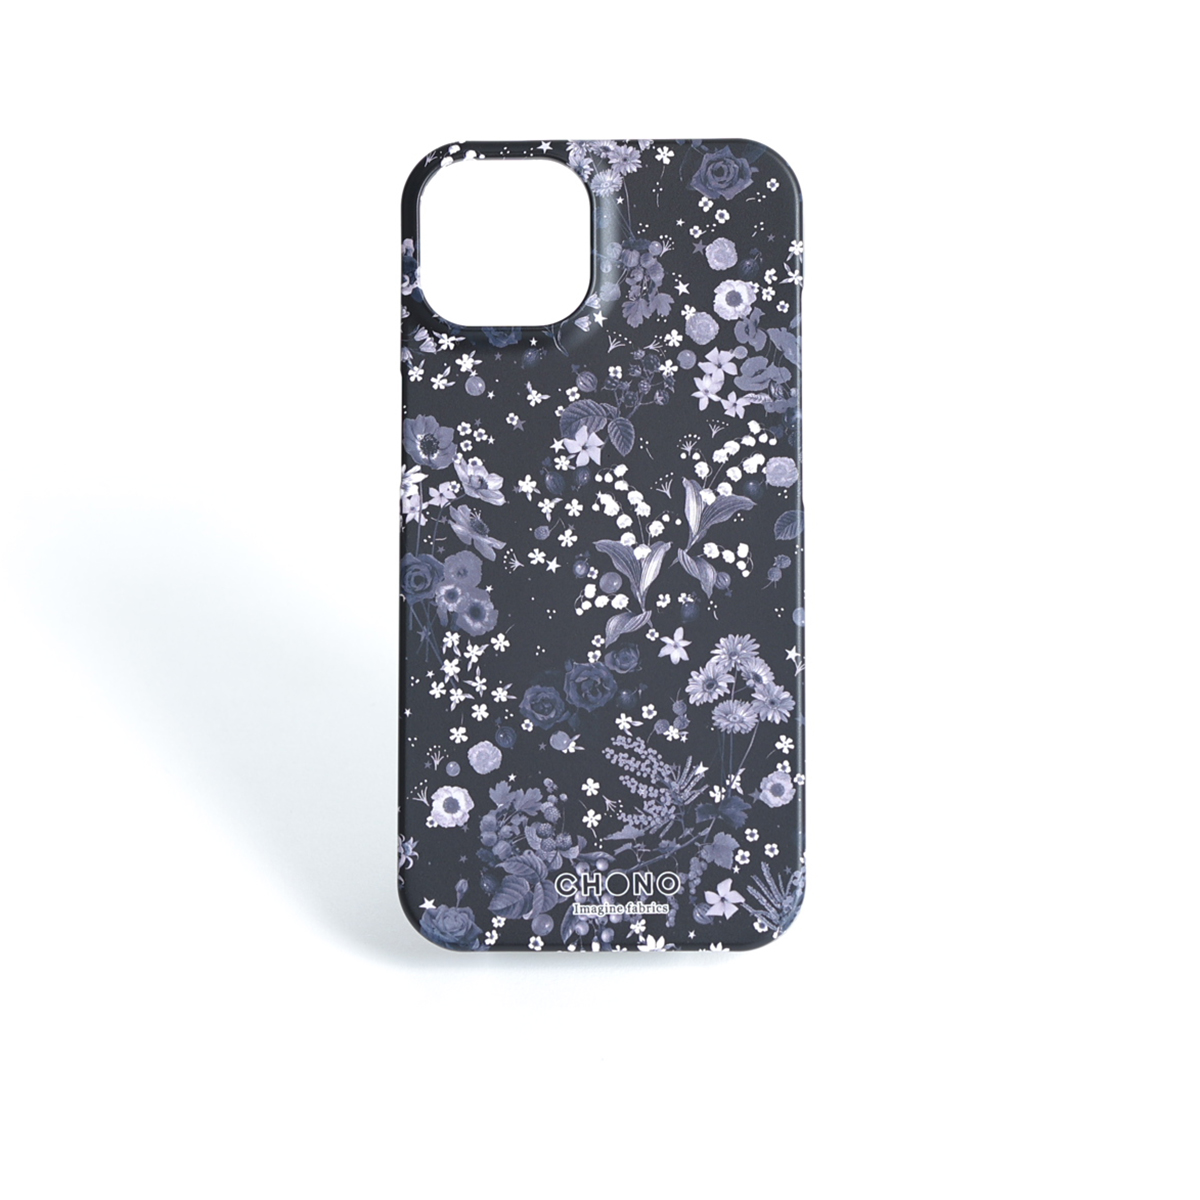 11月下旬お届け予定ご受注商品『Actress flower MONOTONE』 iphone hard case画像